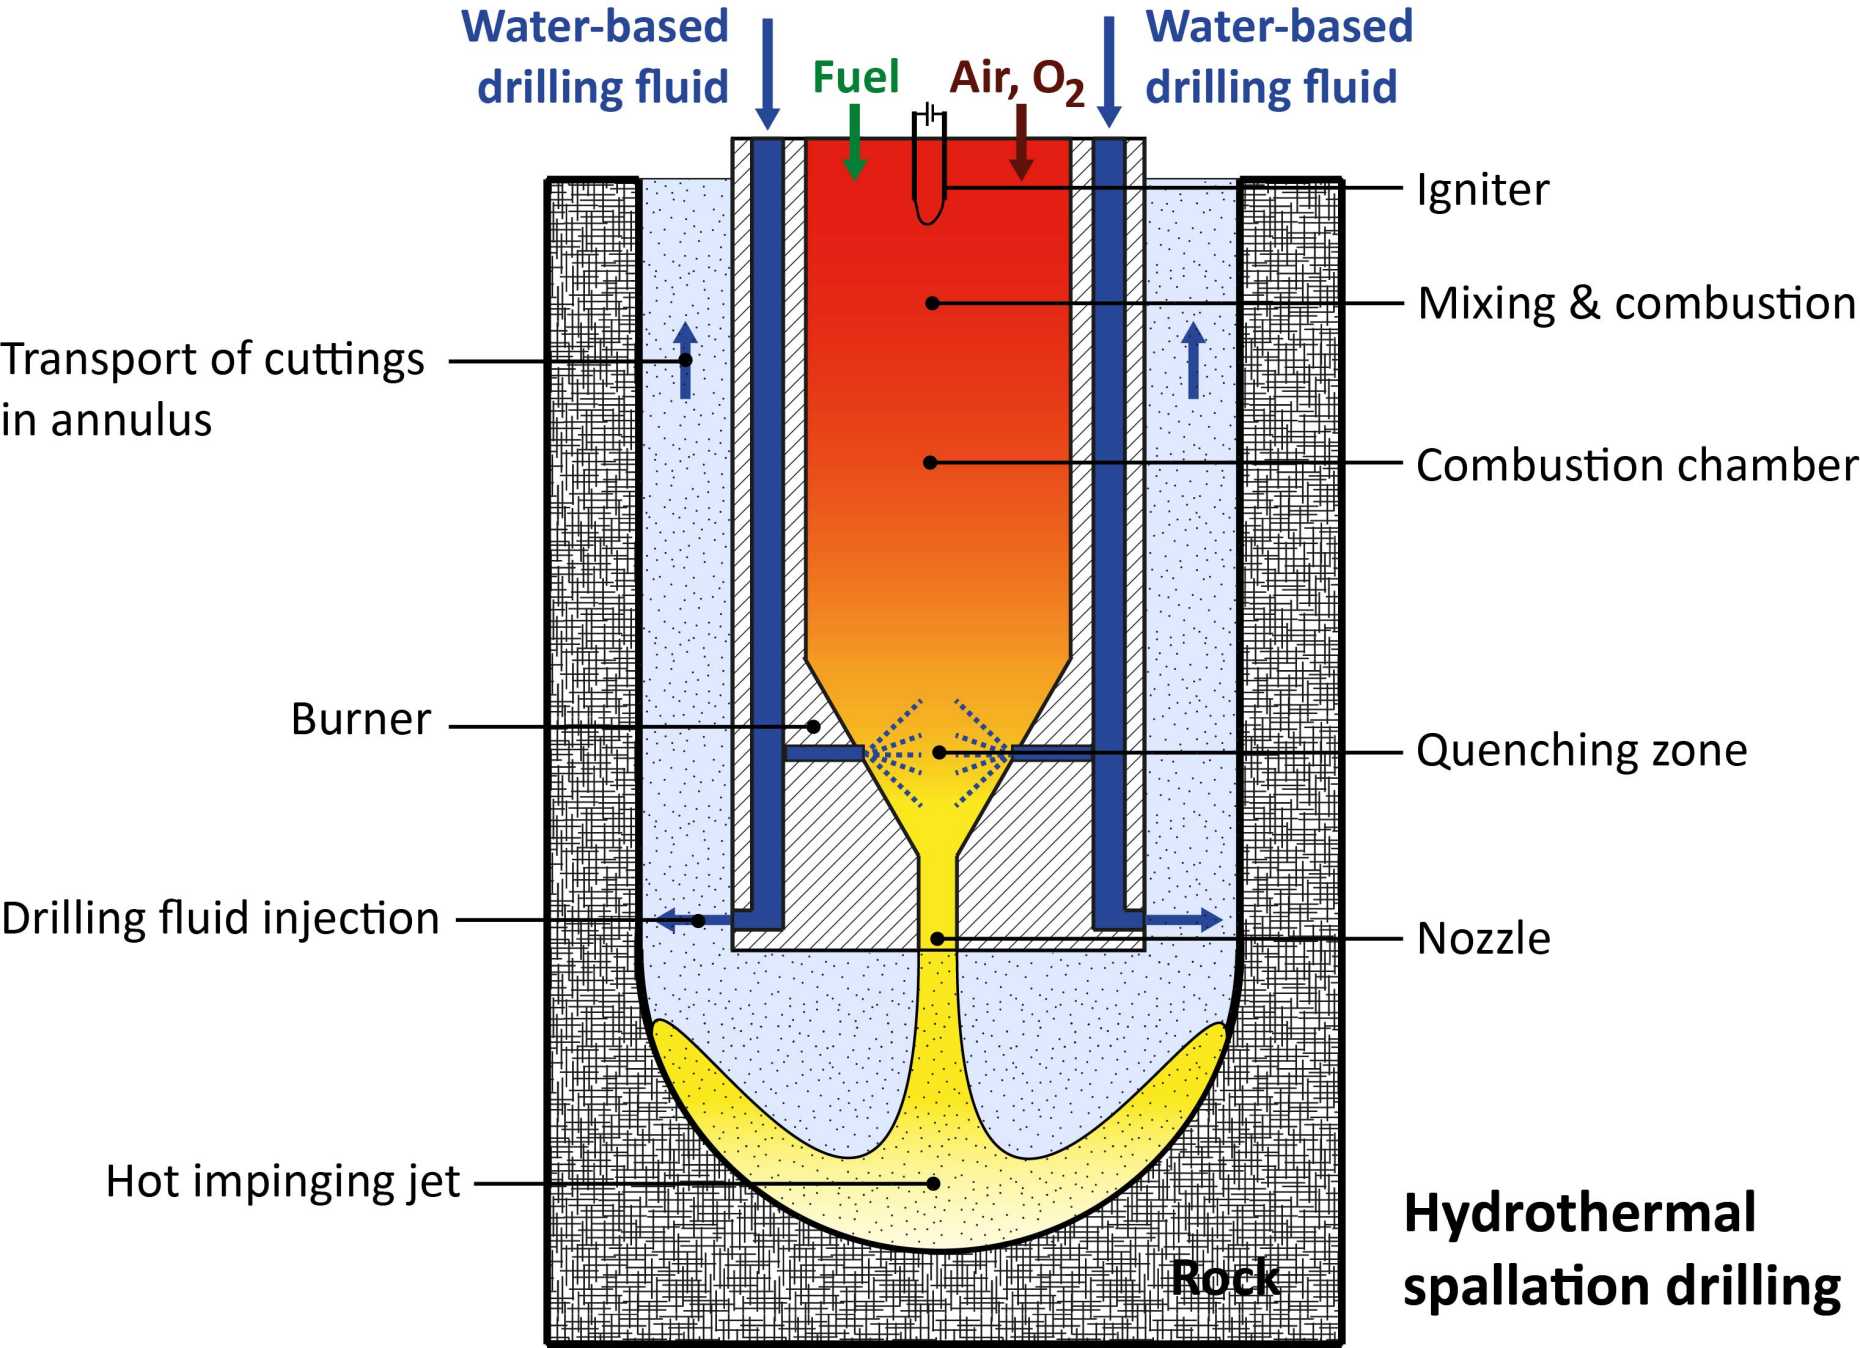 Vergrösserte Ansicht: Möglicher Bohrkopf für das Hydrothermale Flamm-Bohren